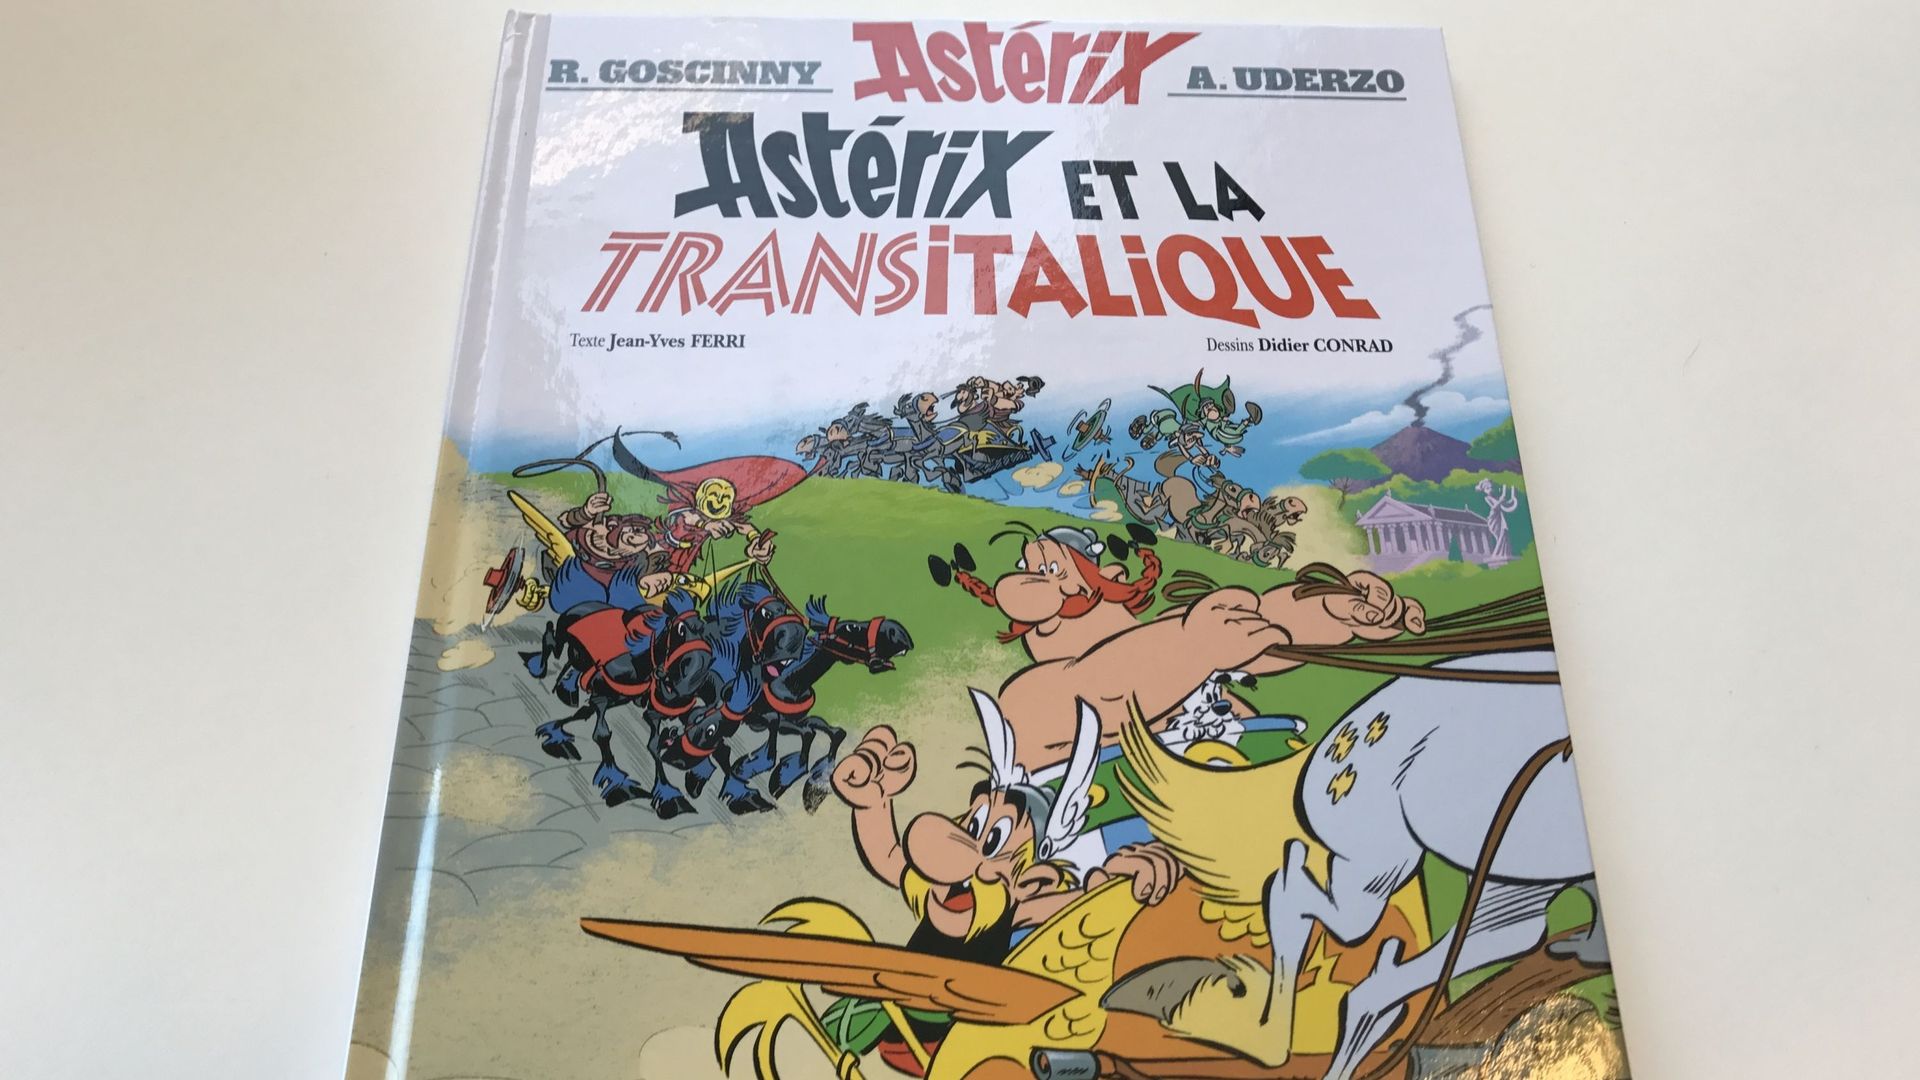 Astérix et la Transitalique: "La marque Astérix a encore de beaux jours devant elle"